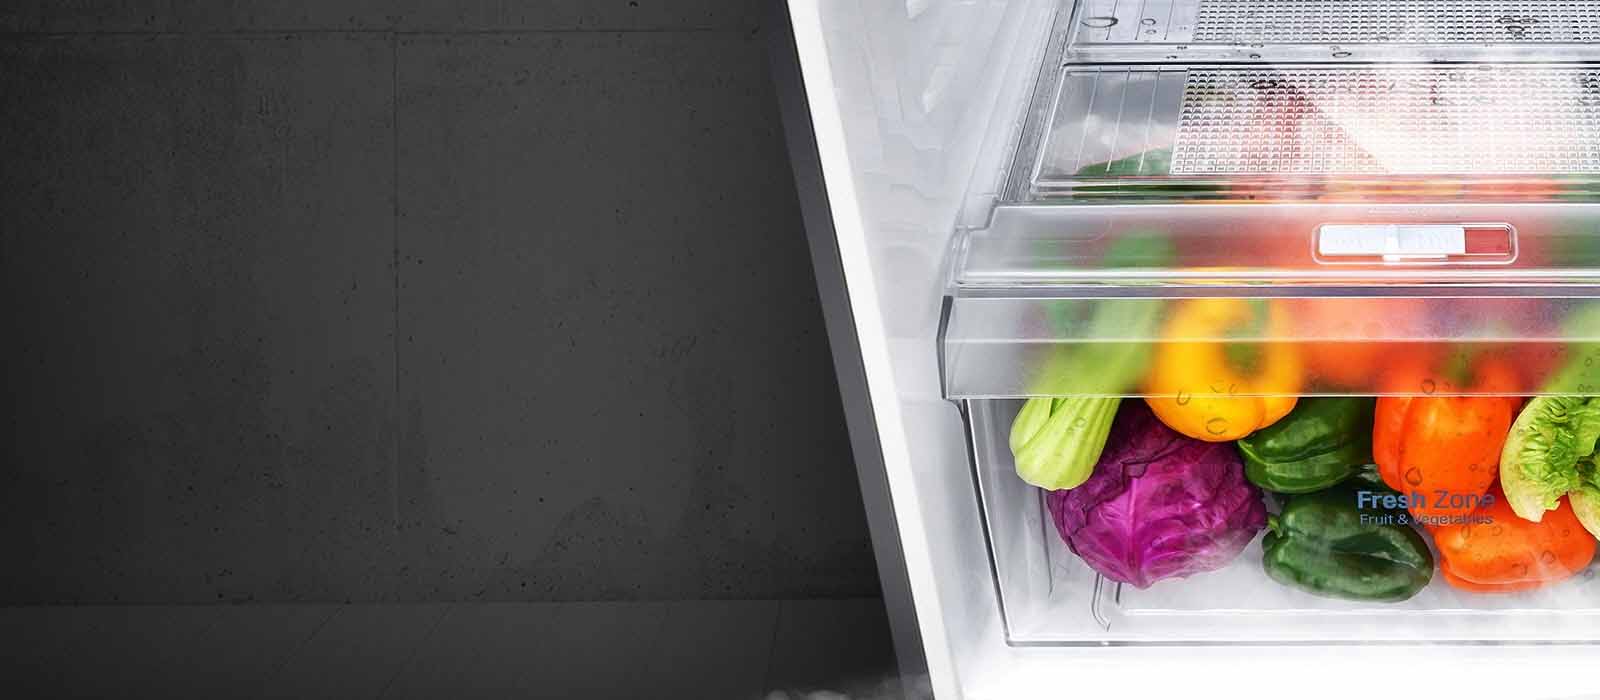 Tủ lạnh LG Inverter 225 Lít GN-M208BL (2 cửa)